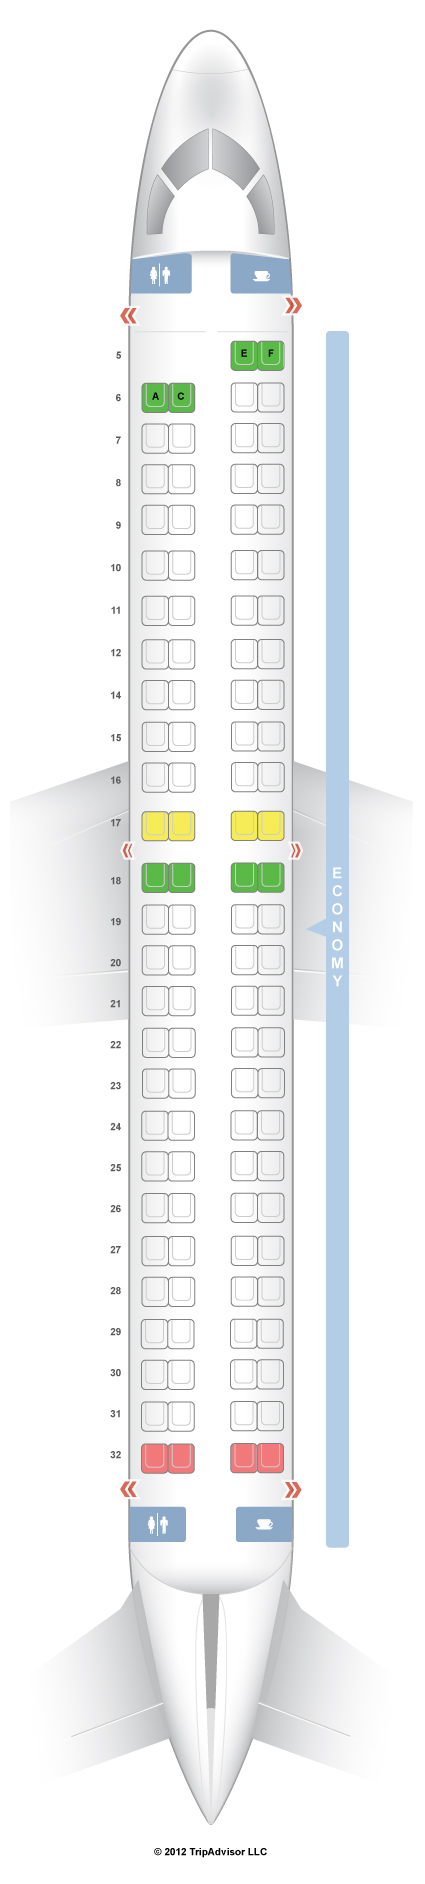 Seatguru Seat Map Copa Airlines